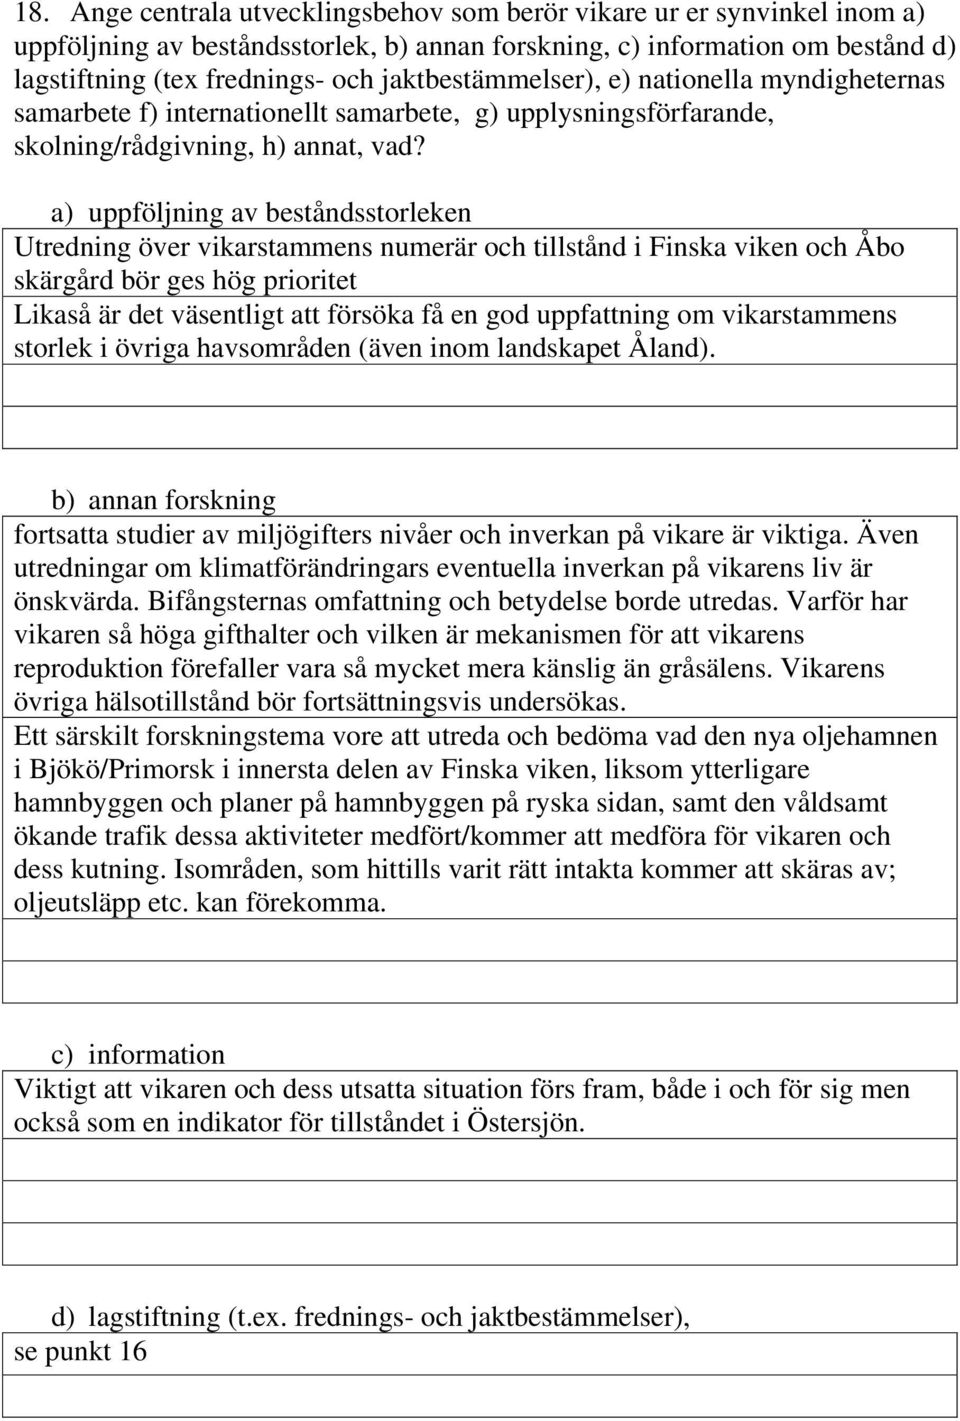 a) uppföljning av beståndsstorleken Utredning över vikarstammens numerär och tillstånd i Finska viken och Åbo skärgård bör ges hög prioritet Likaså är det väsentligt att försöka få en god uppfattning